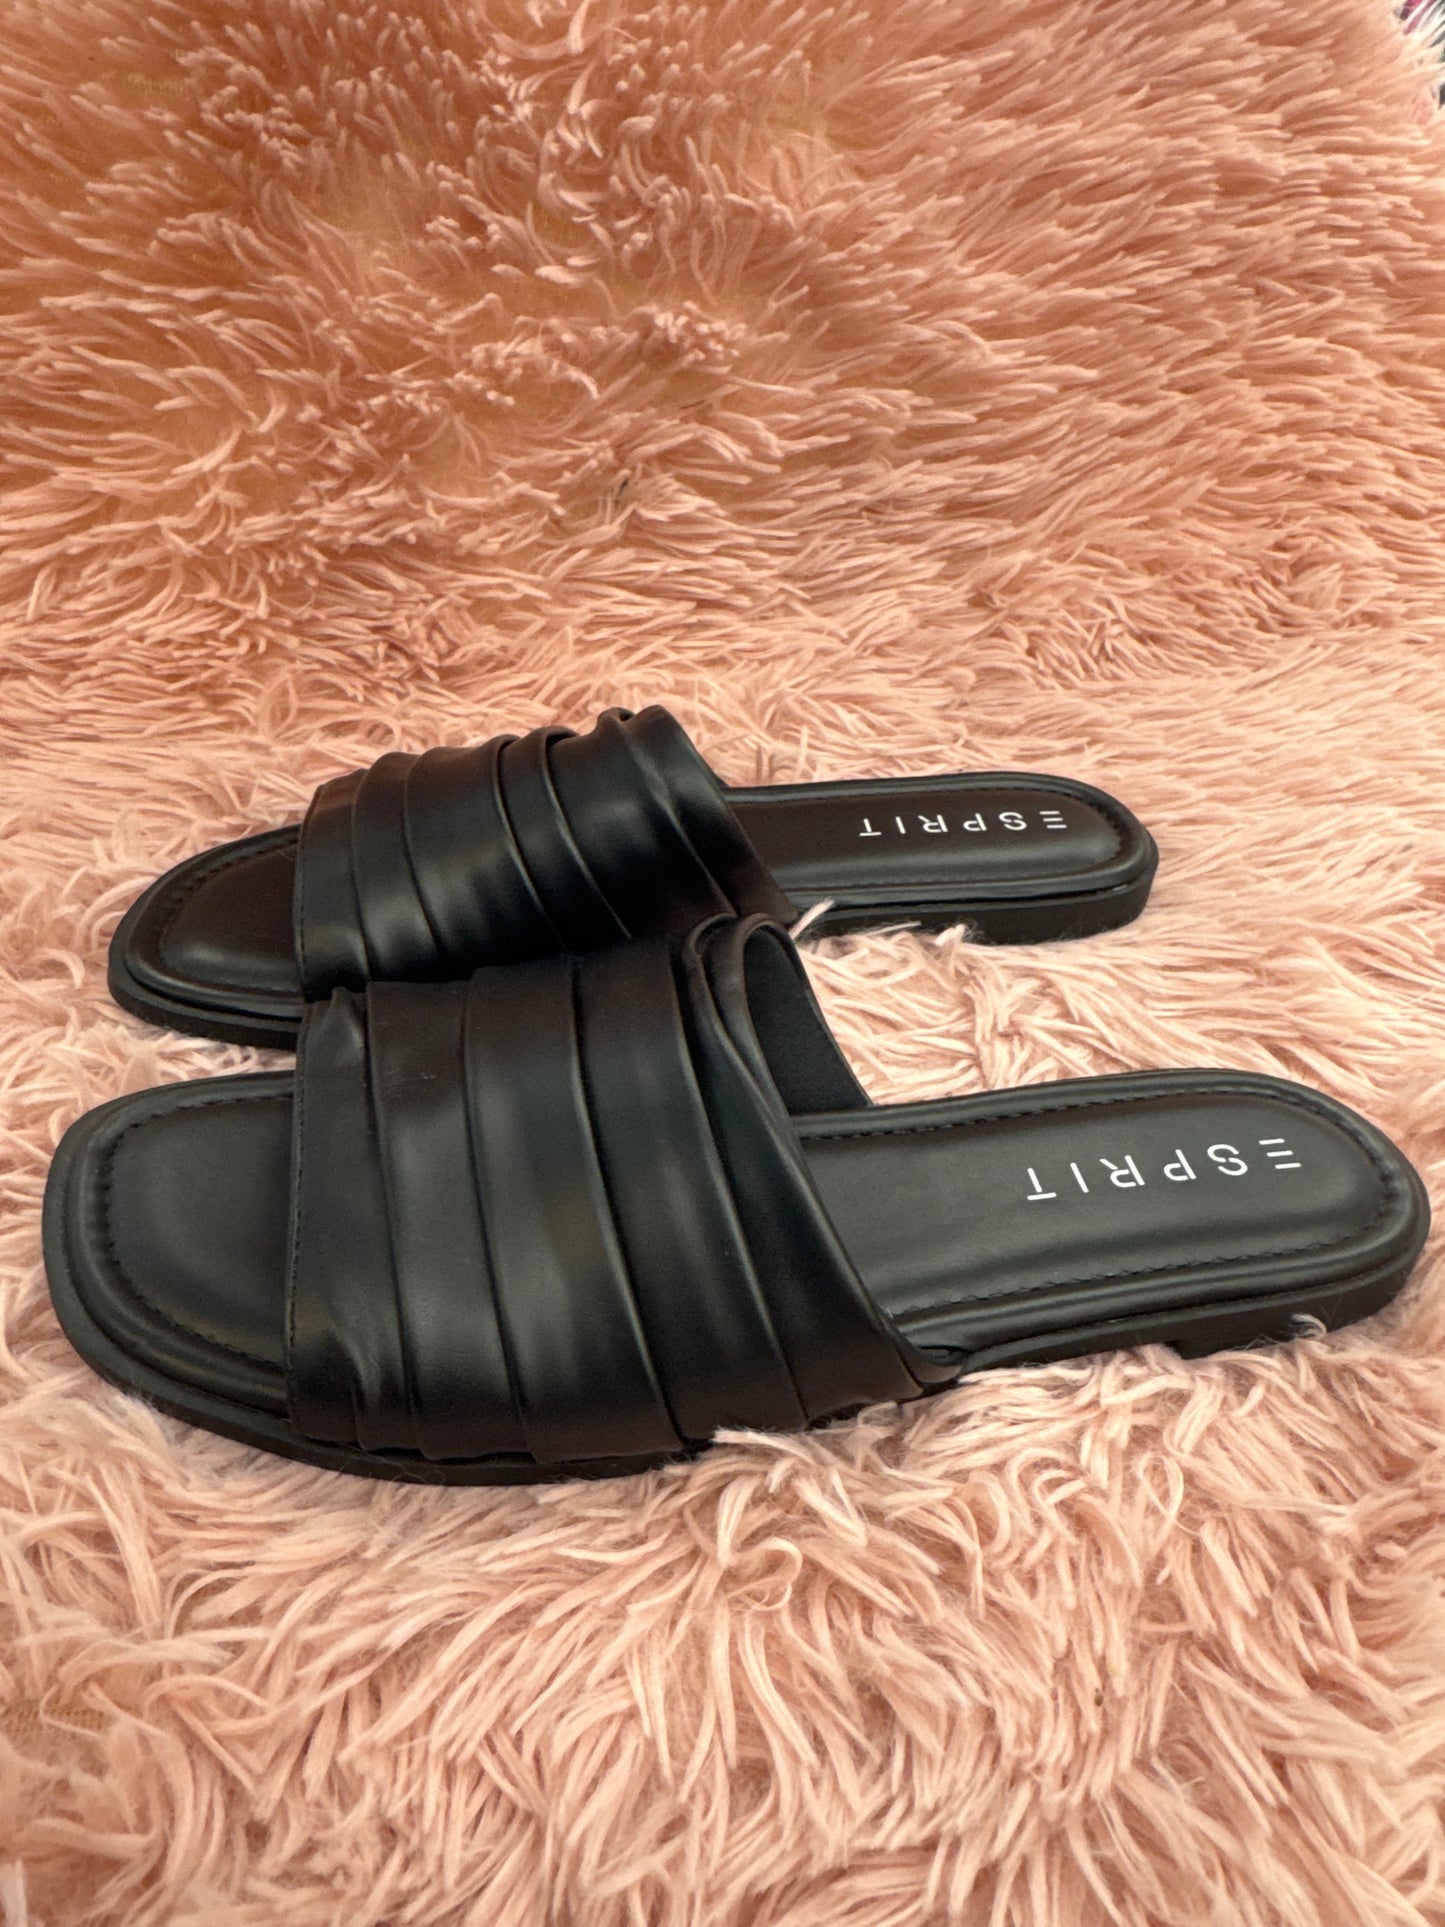 Sandals Flip Flops By Esprit  Size: 7.5